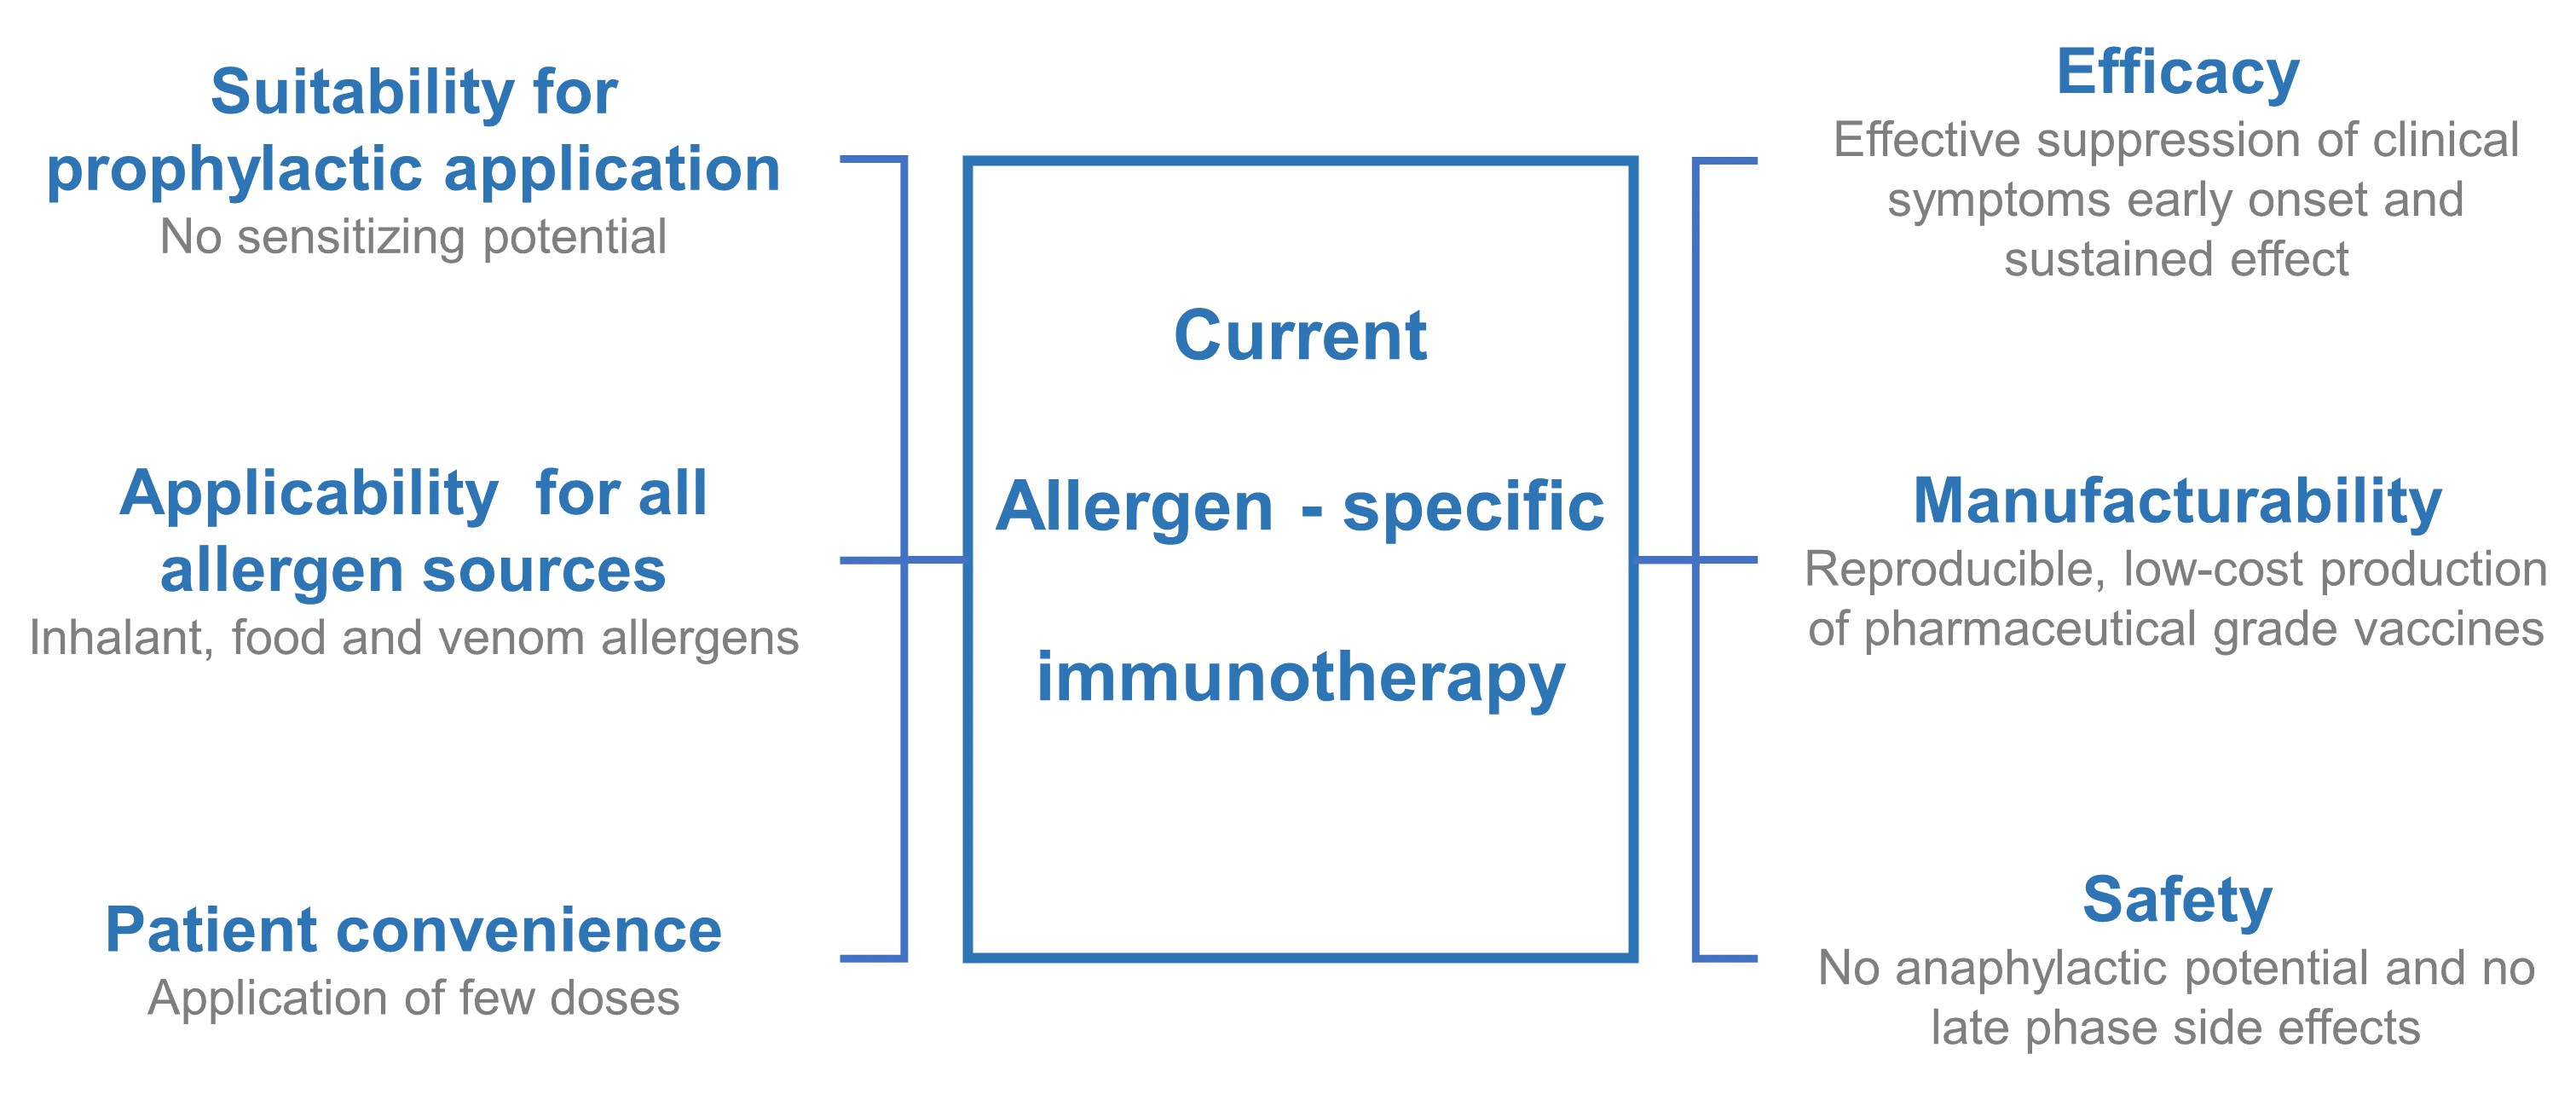 Current allergen- specific immunotherapy.jpg